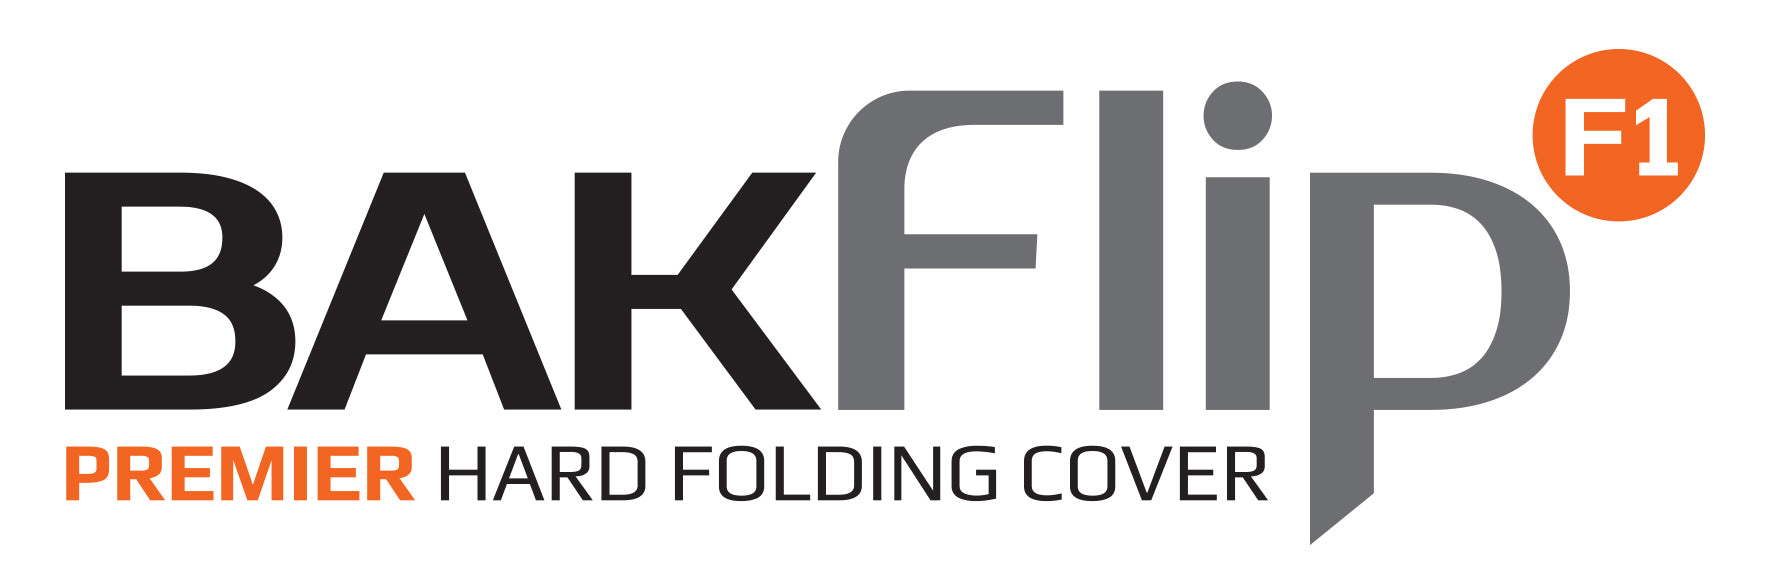 BAK BAKFlip F1 Hard Folding Truck Bed Cover - 2004-2015 Nissan Titan 6' 7" Bed Model 772504